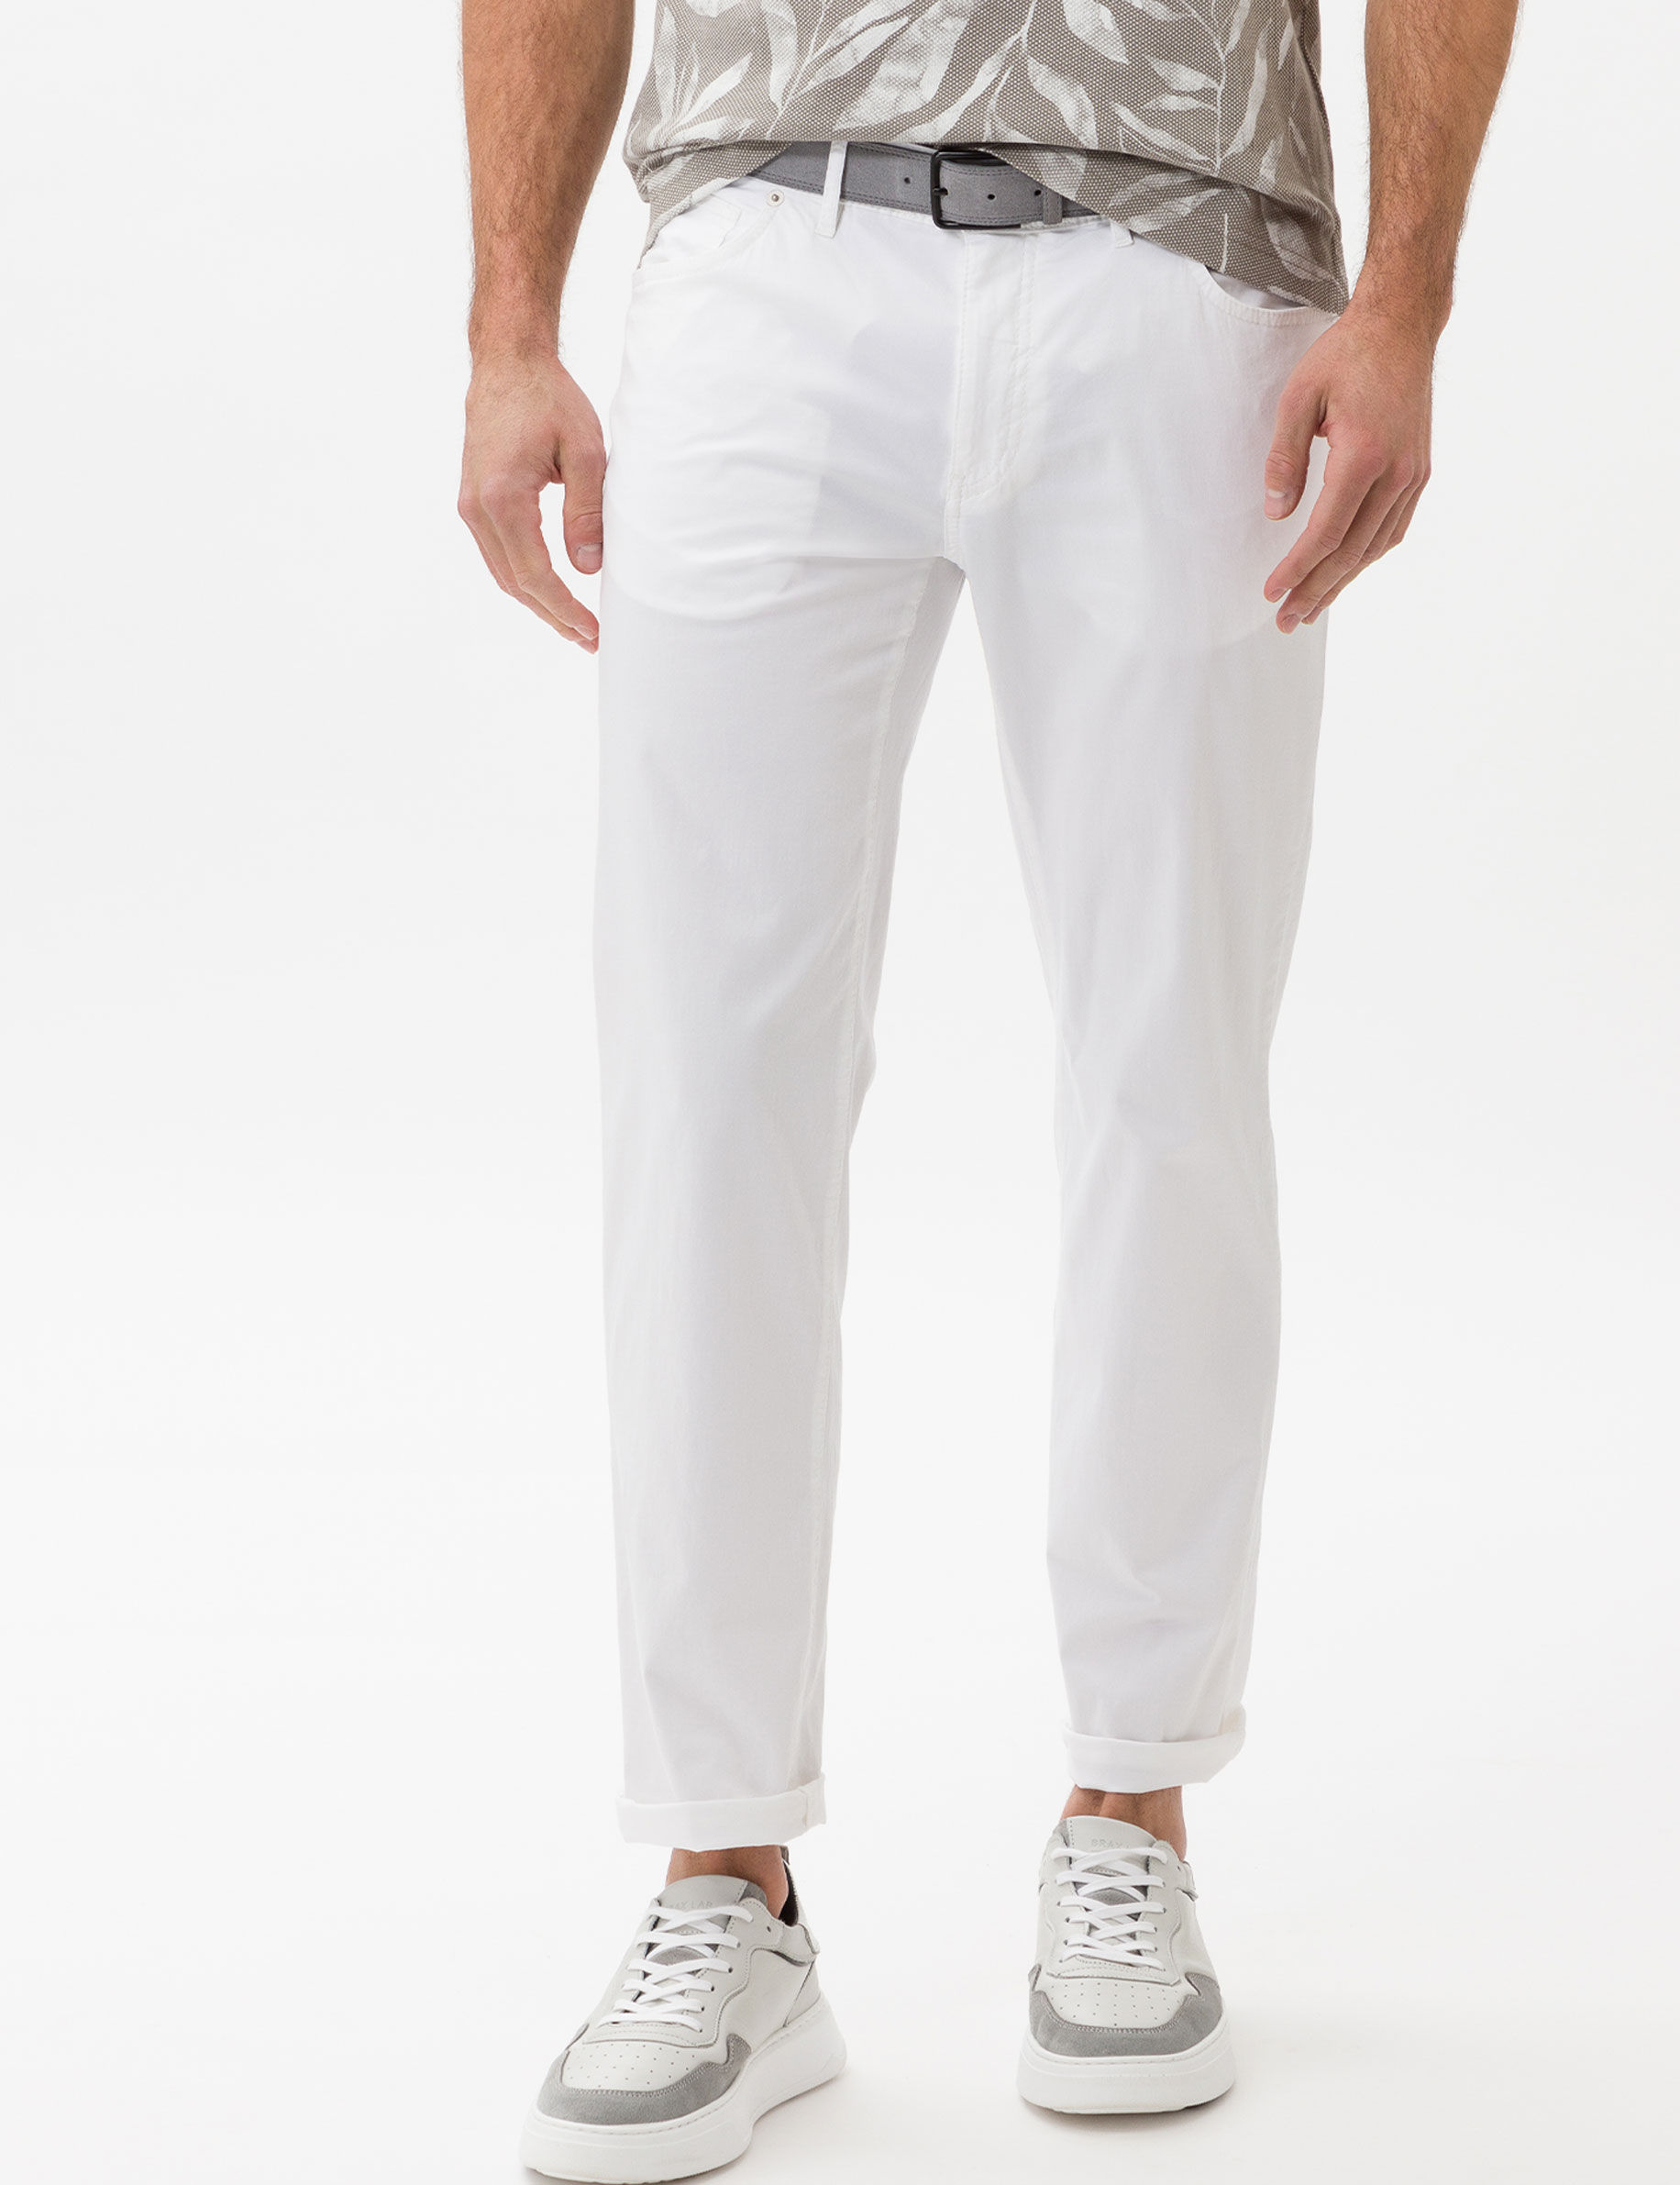 Men Style CADIZ WHITE Straight Fit Model Front